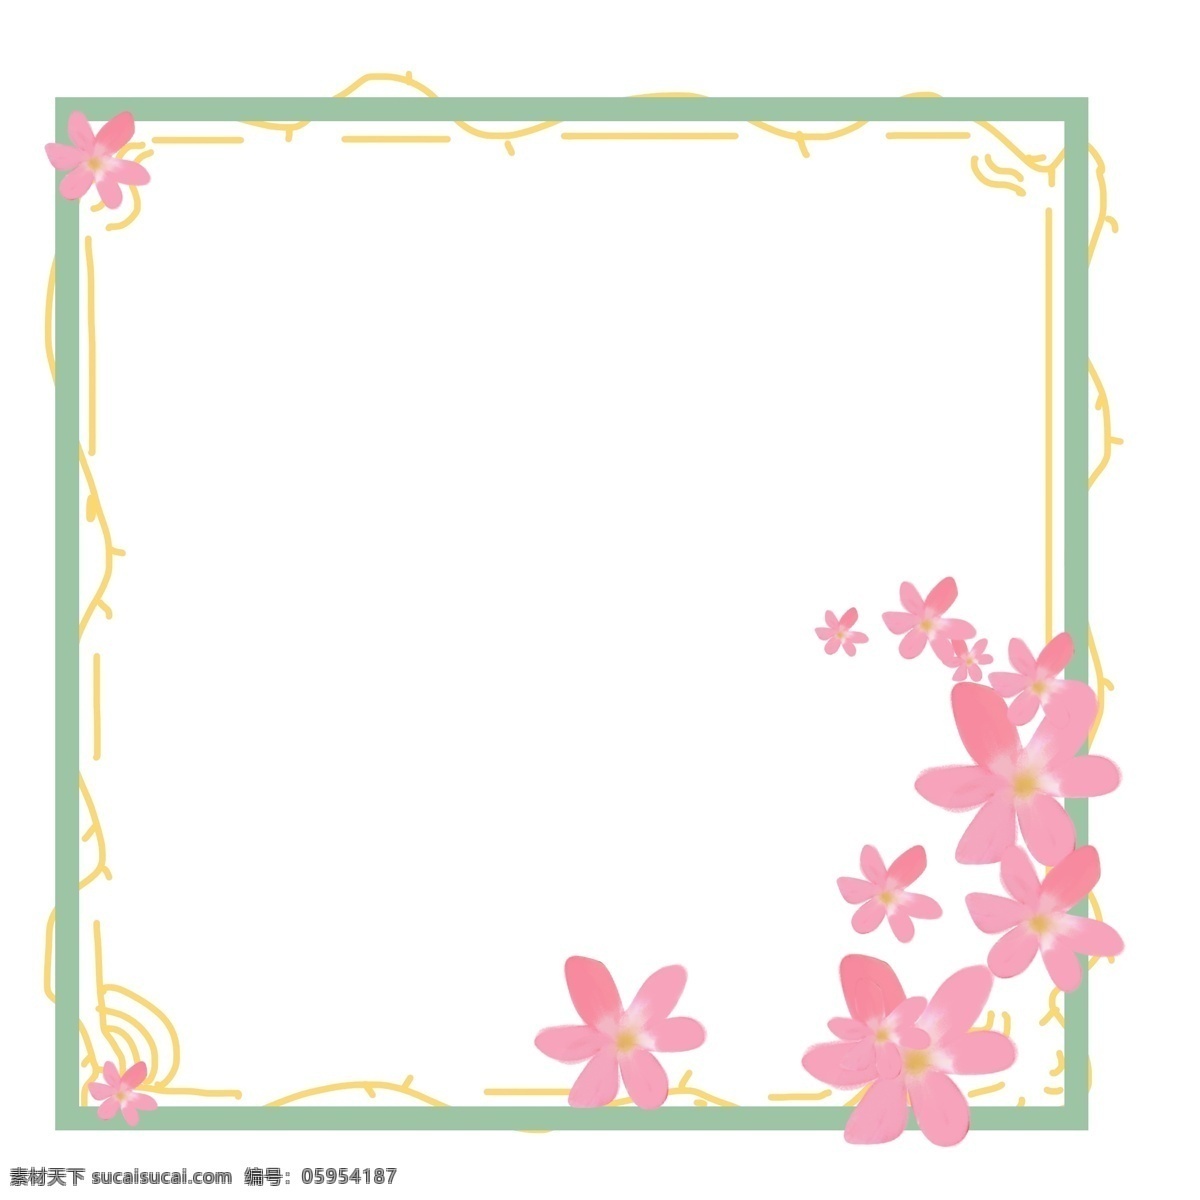 粉色 花朵 绿色 边框 粉色花朵 绿色边框 清新配色 舒适清新 浅色搭配 可爱 小清新 原创